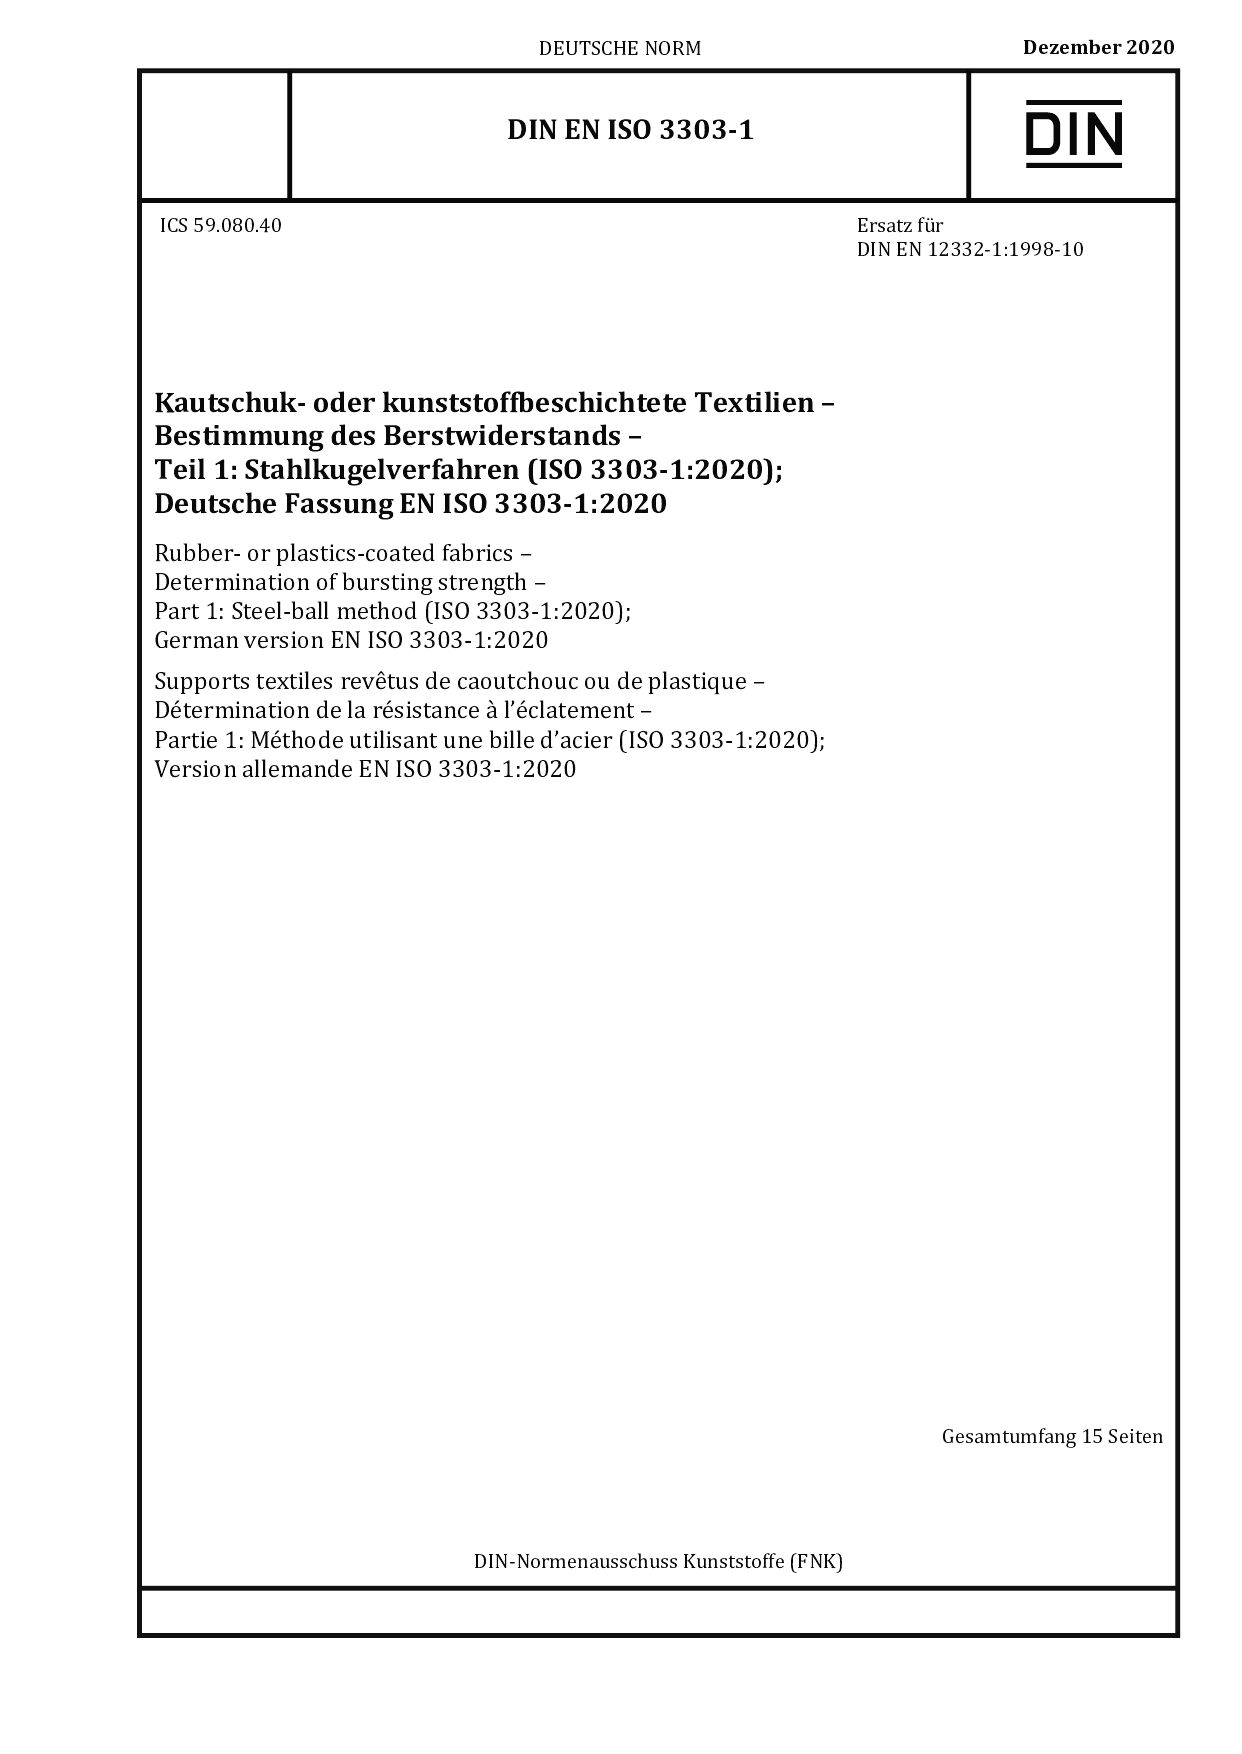 DIN EN ISO 3303-1:2020封面图